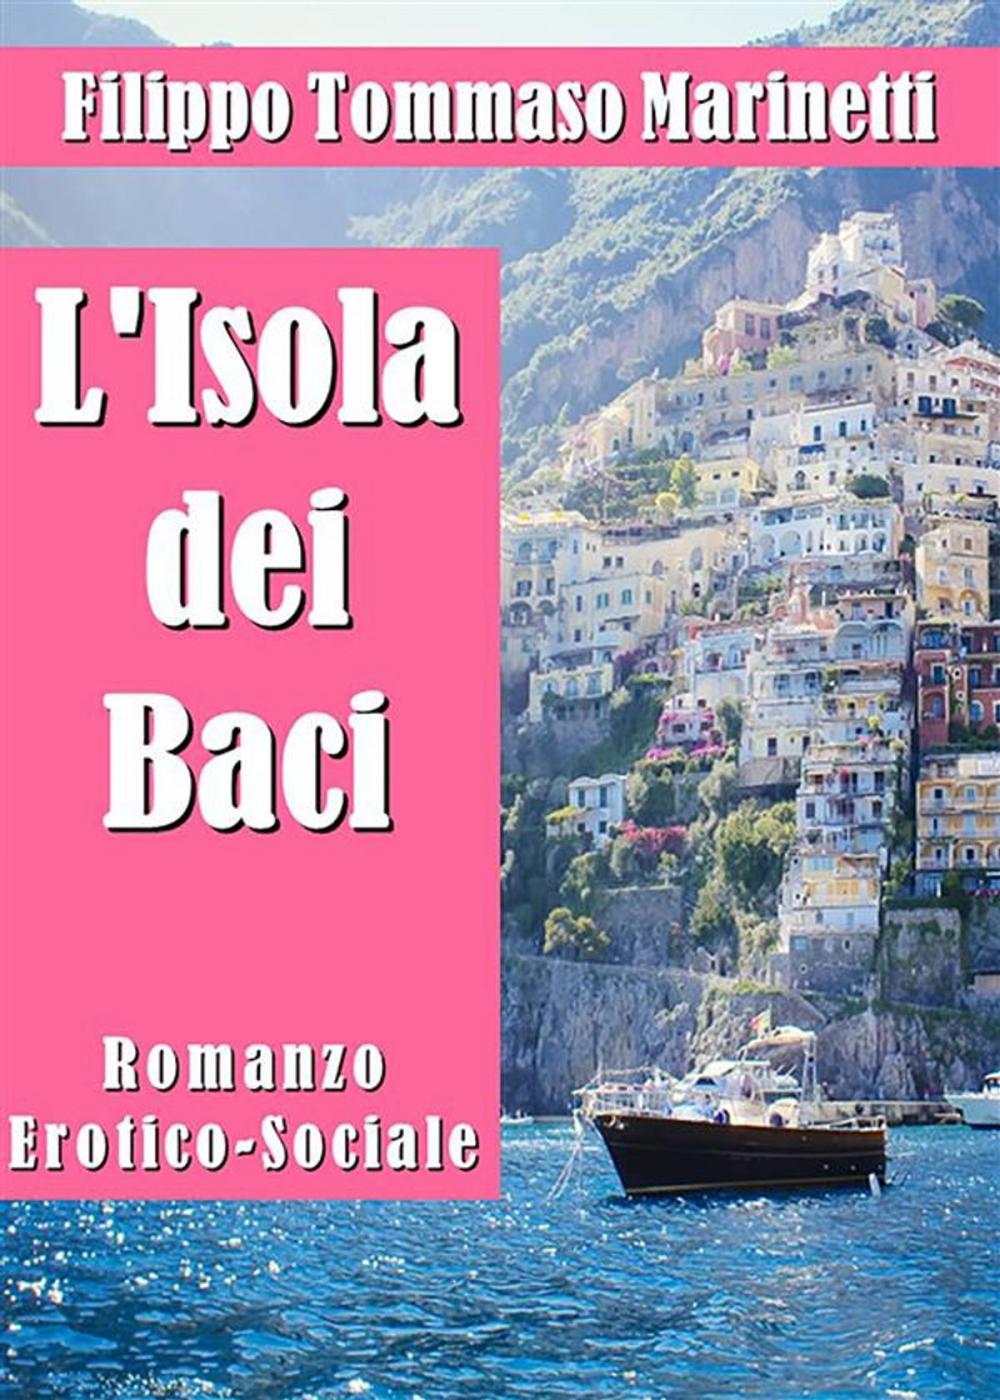 Big bigCover of L'Isola dei Baci. Romanzo Erotico-Sociale